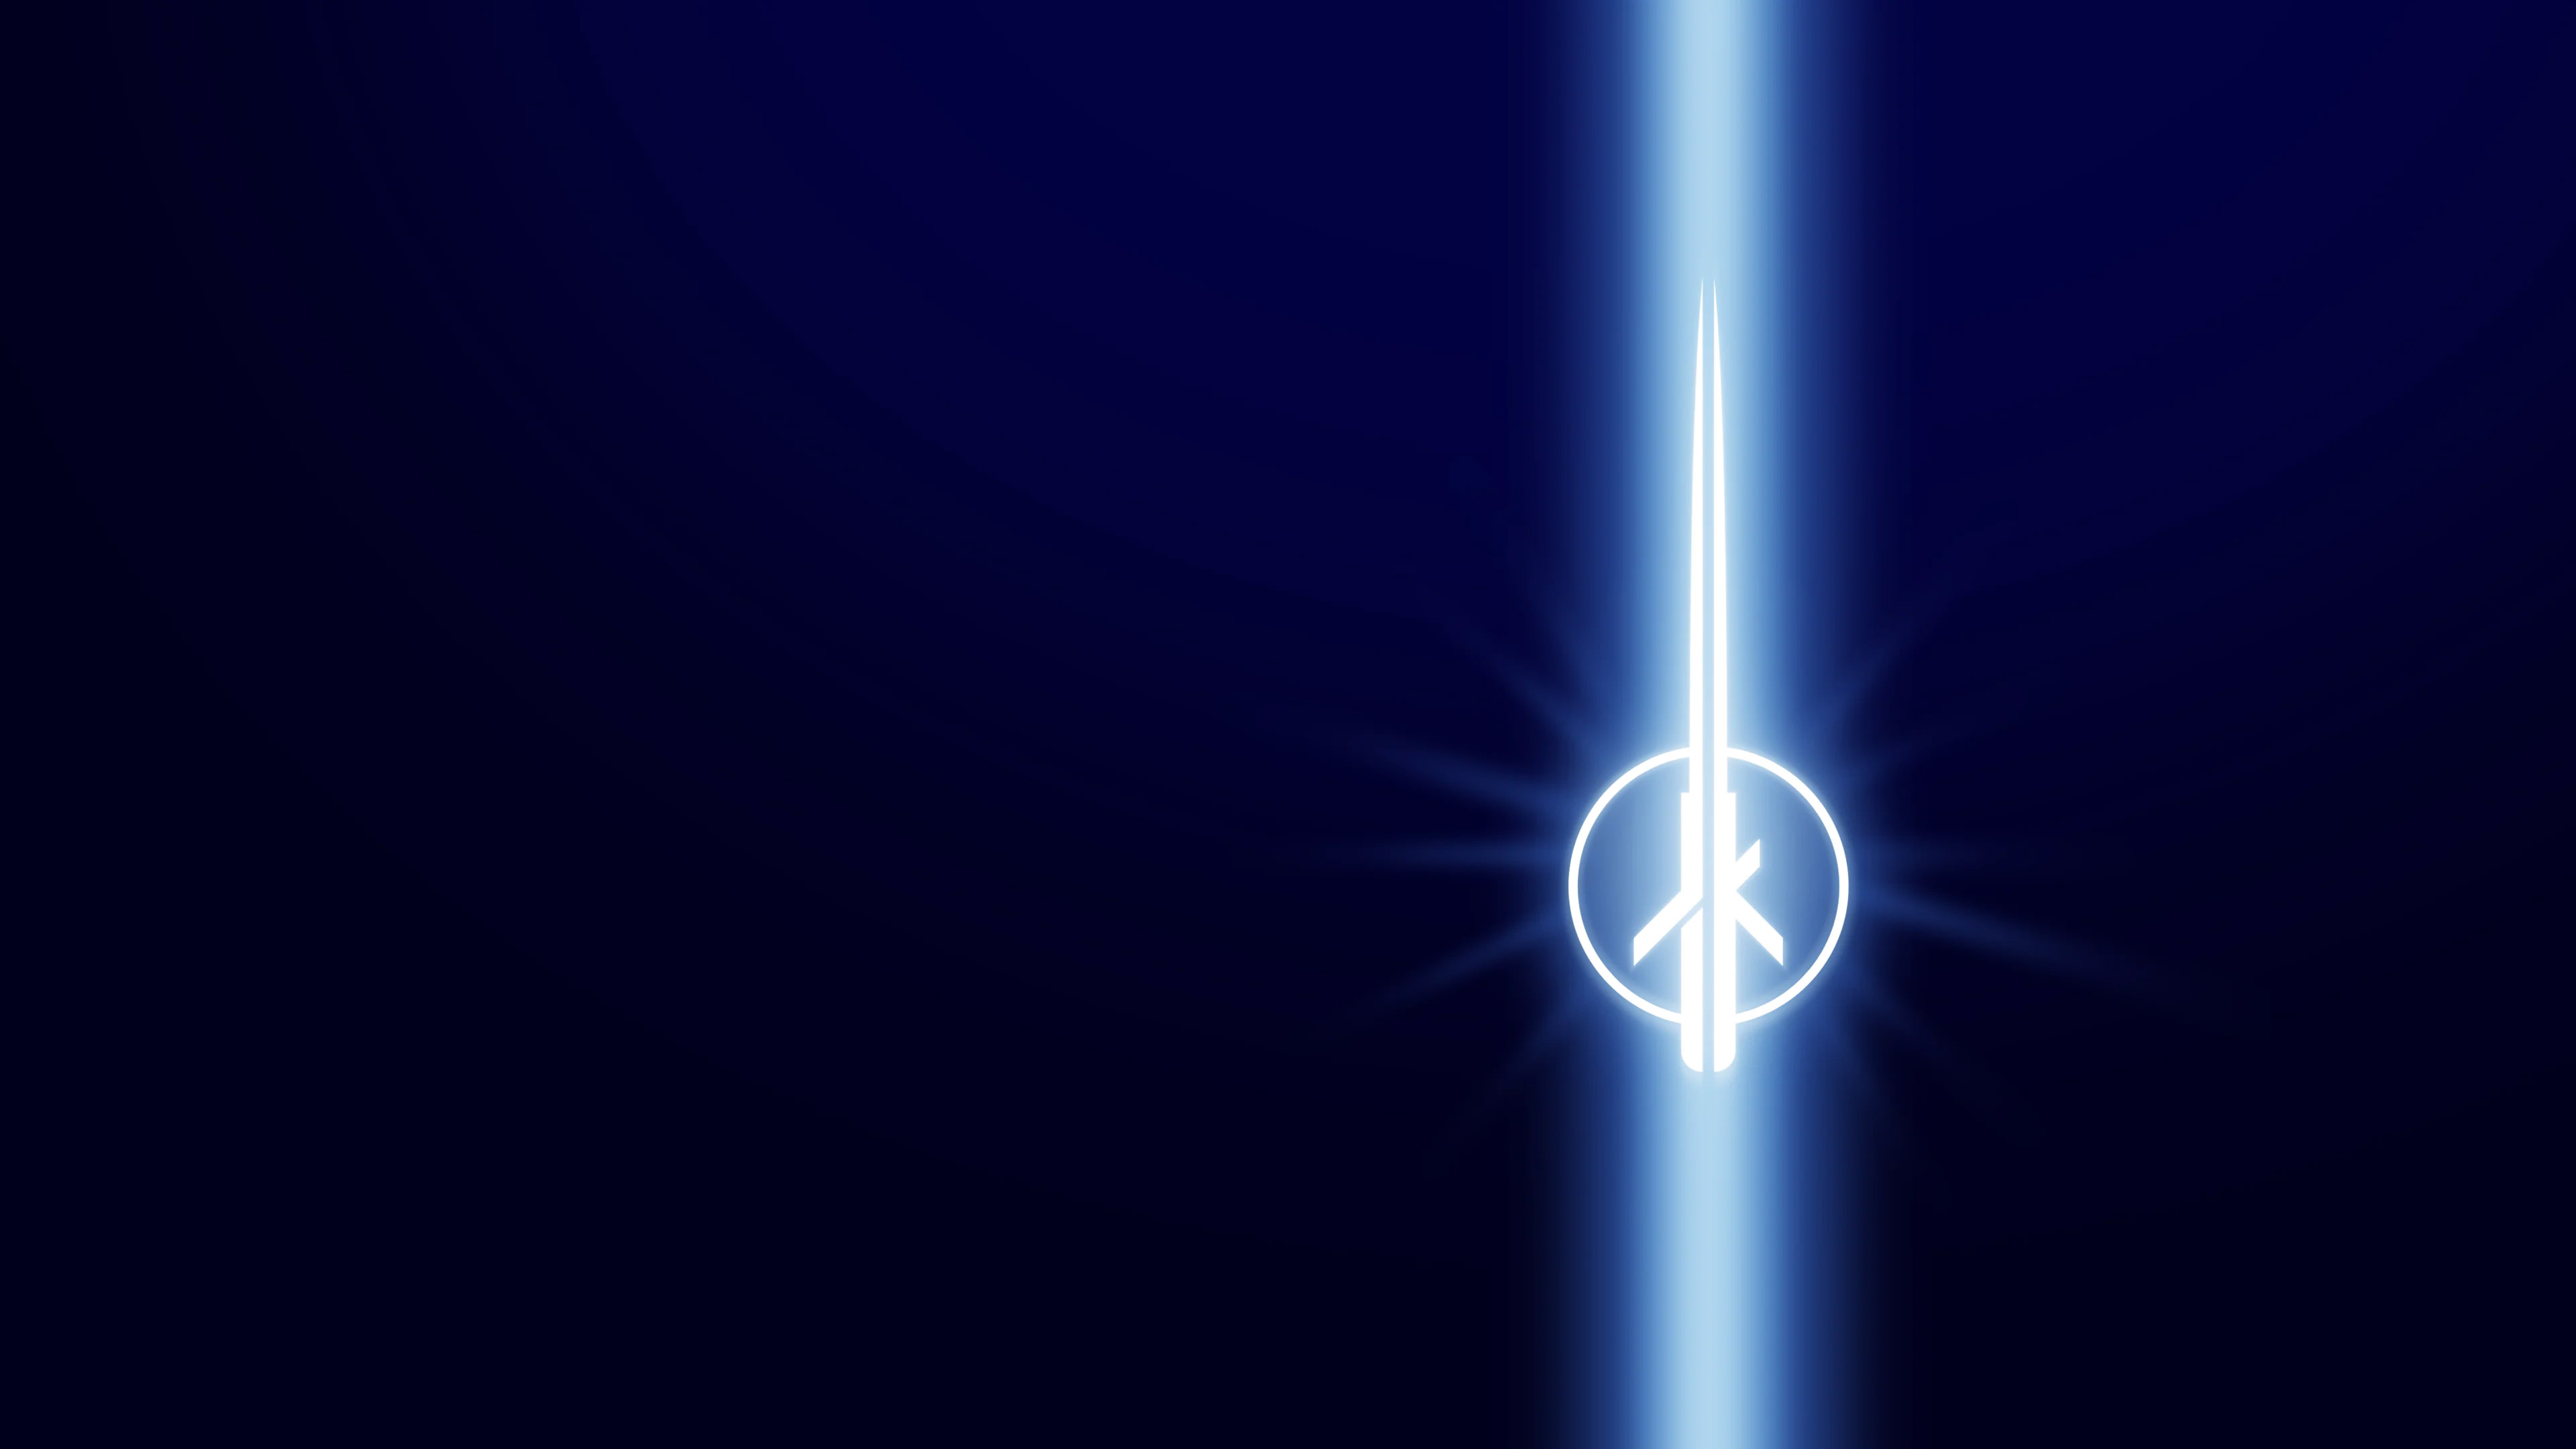 STAR WARS: Jedi Knight II: Jedi Outcast